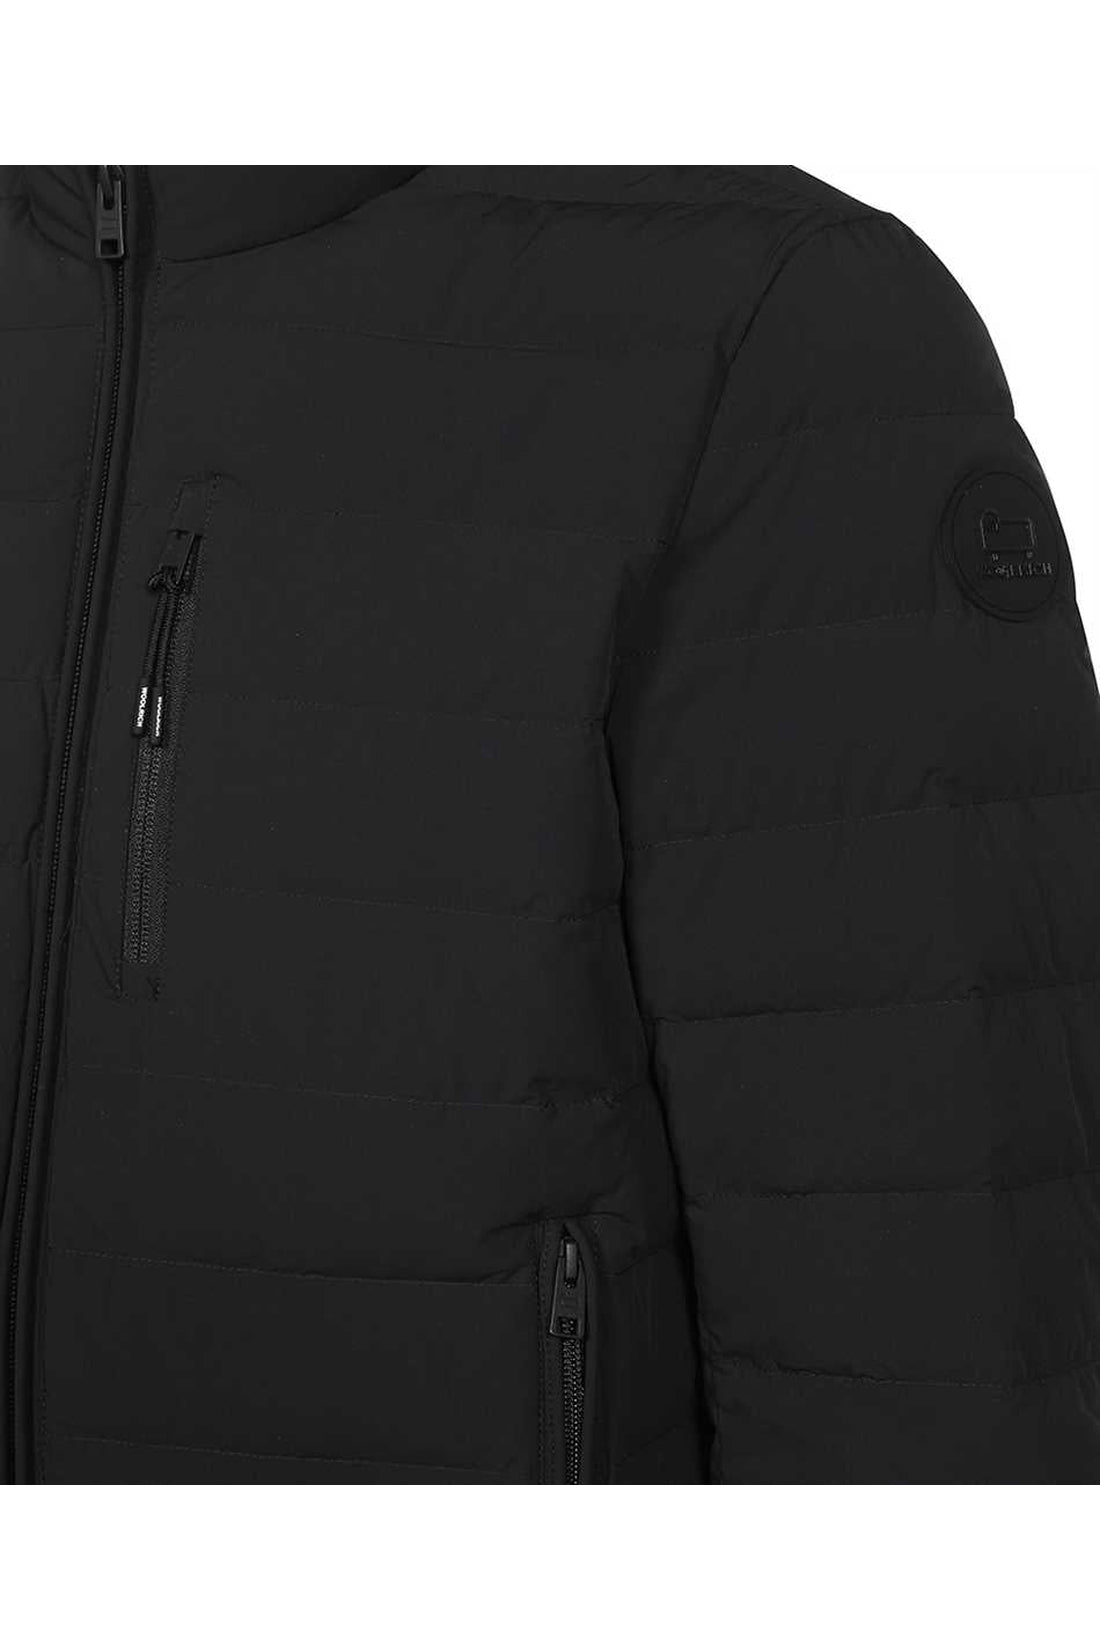 Woolrich-OUTLET-SALE-Sundance nylon down jacket-ARCHIVIST